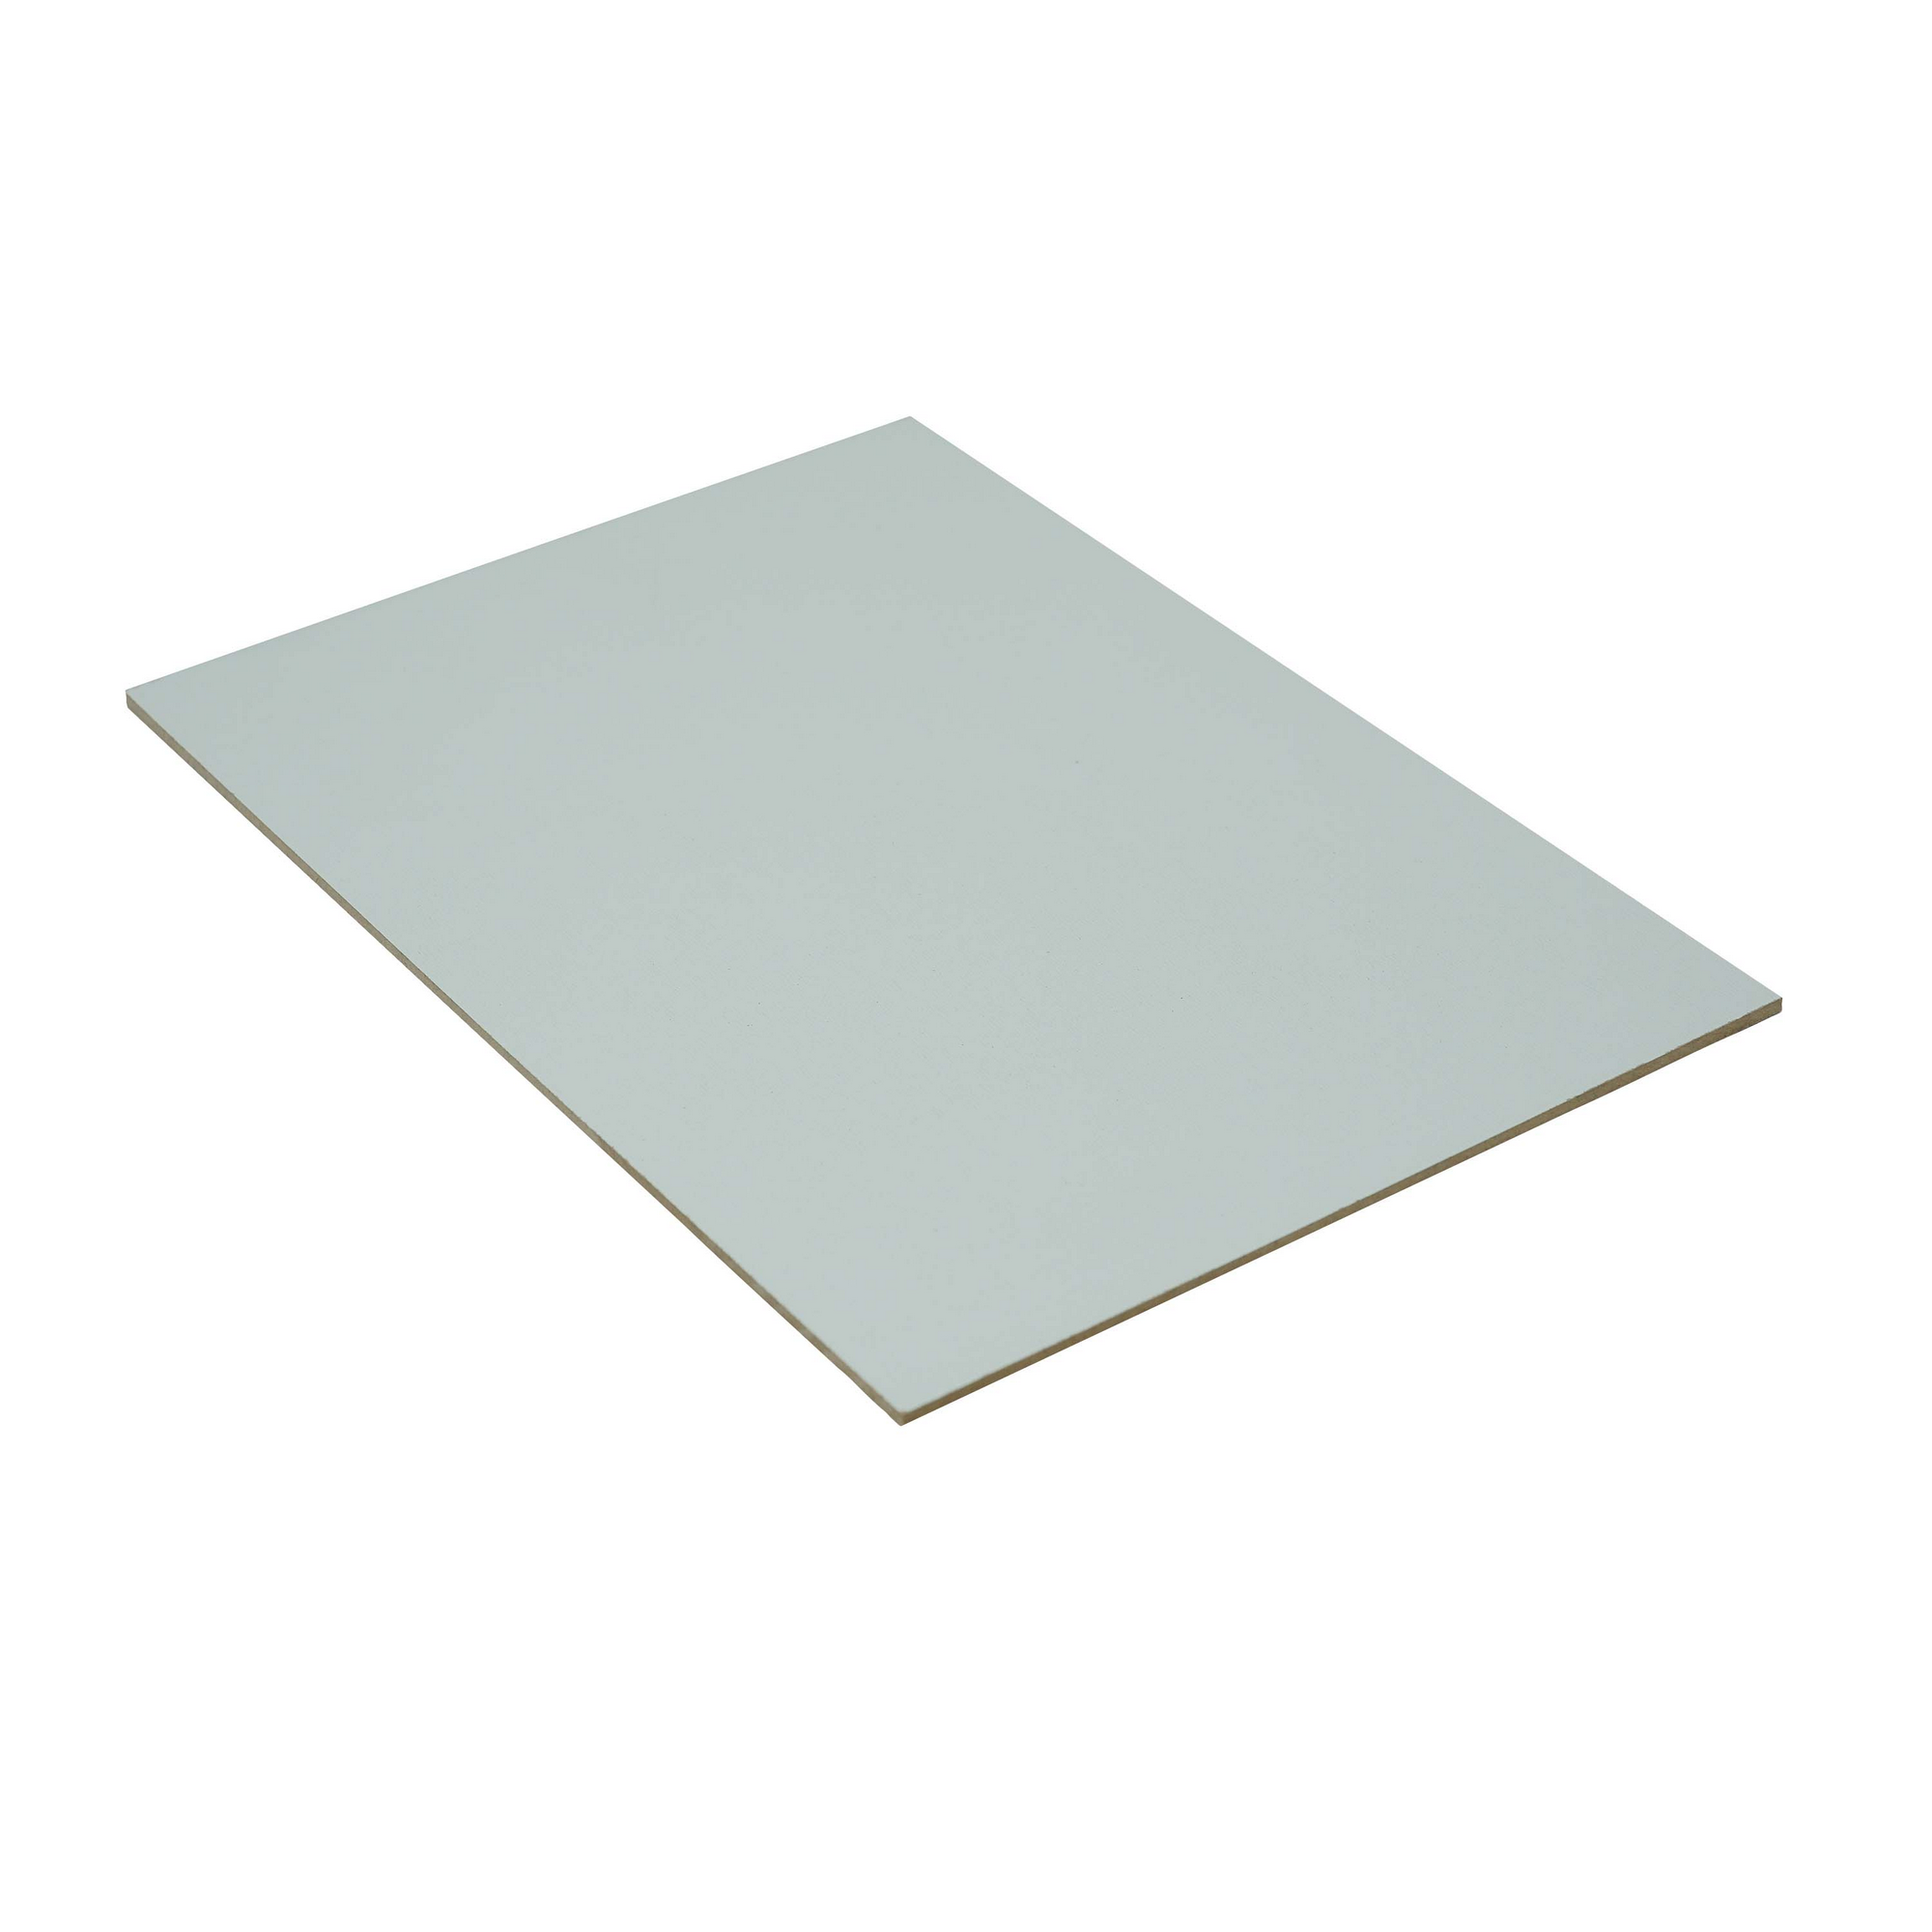 Dünn-MDF-Platte melaminbeschichtet 2800 x 2070 x 5 mm + product picture